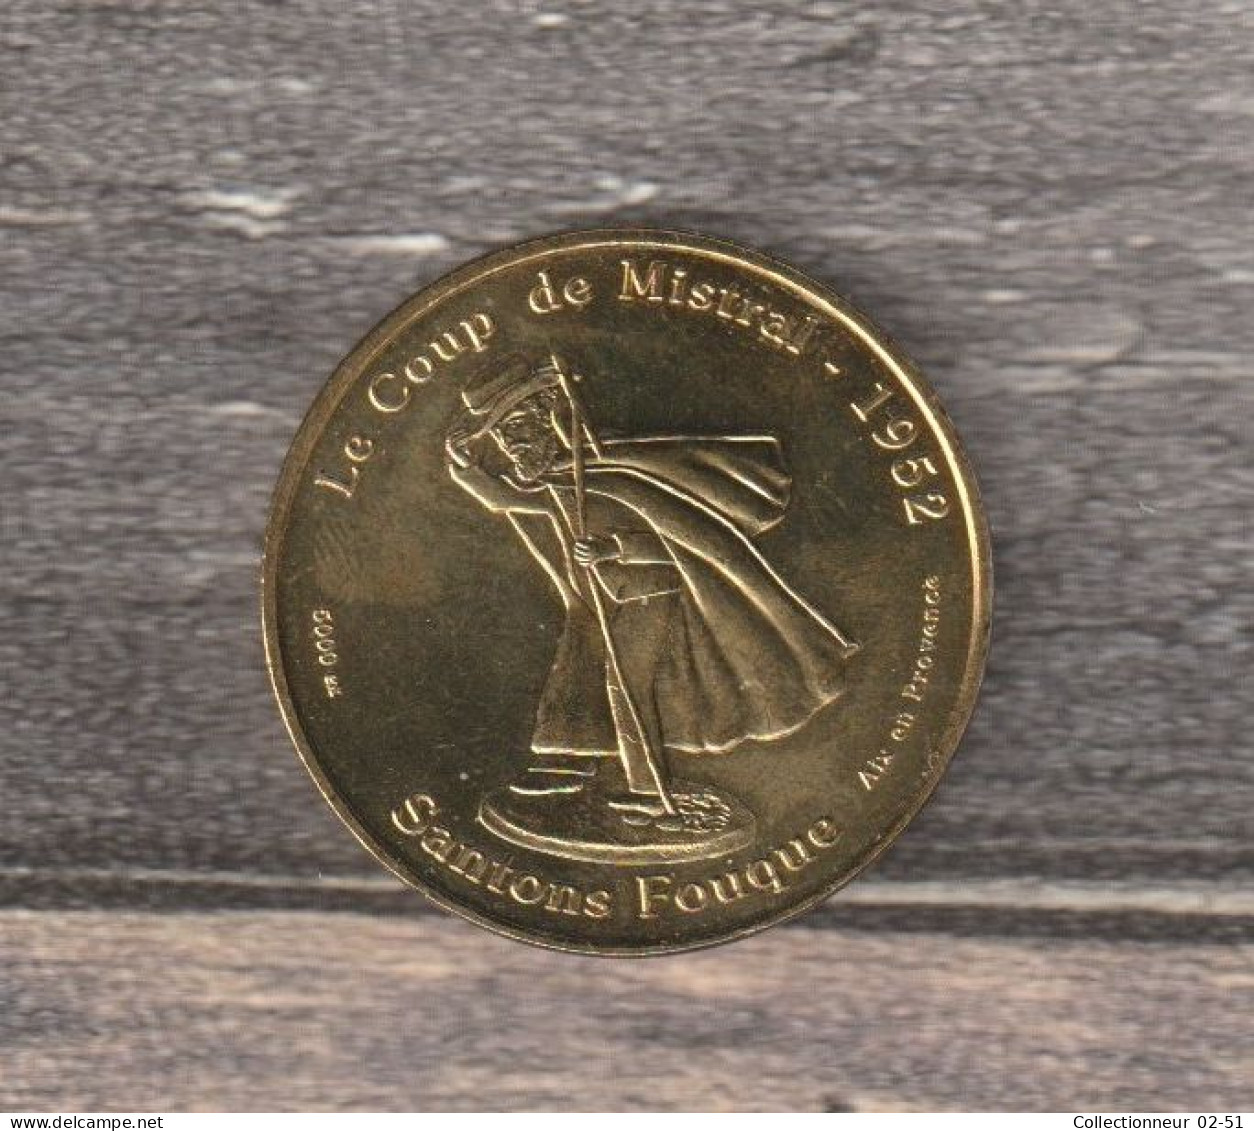 Monnaie De Paris : Le Coup De Mistral (Santons Fouque) - 2009 - 2009